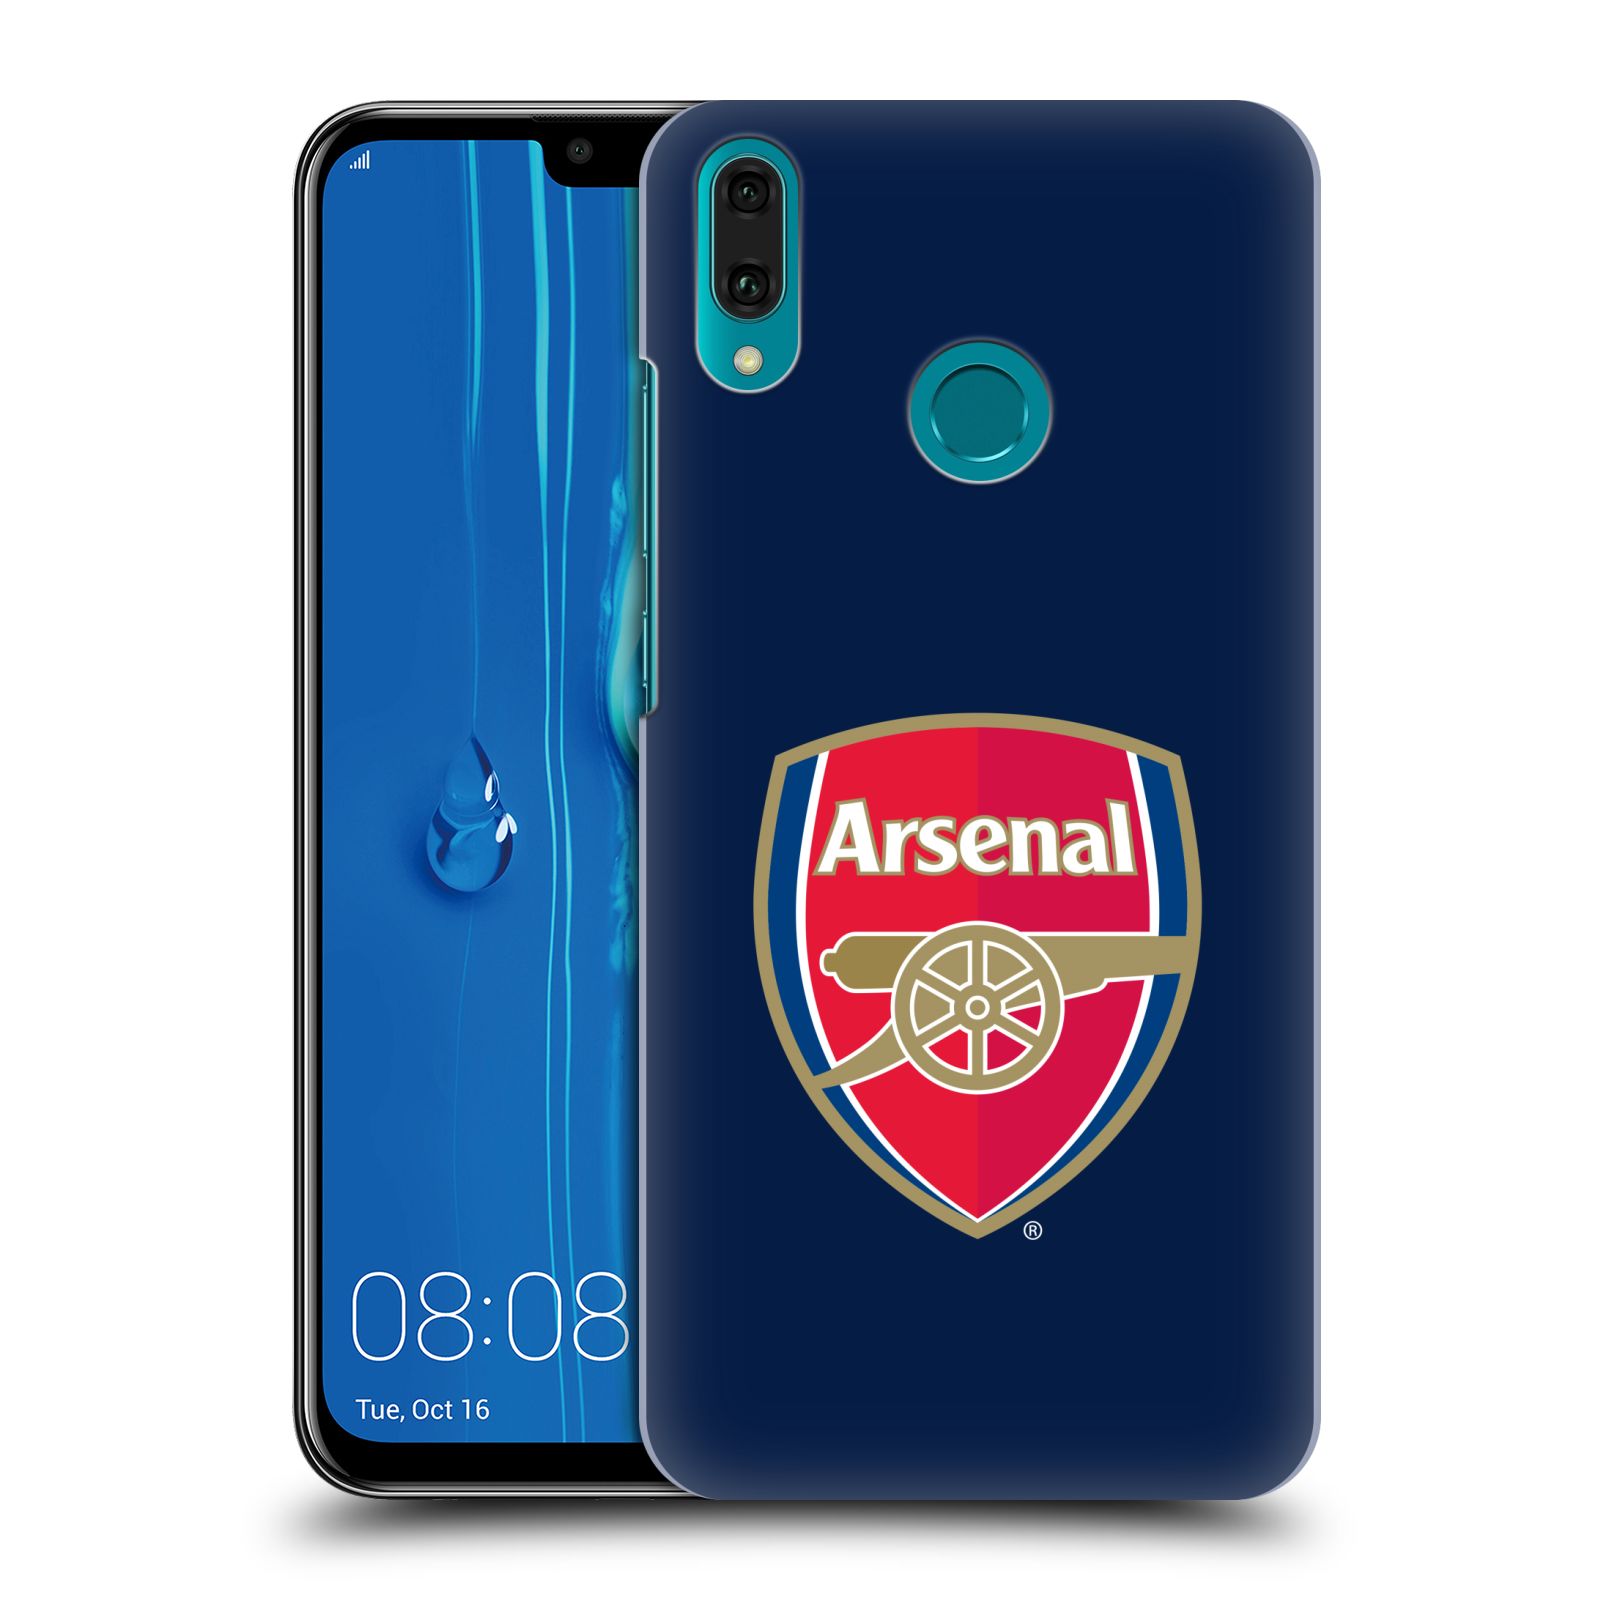 Pouzdro na mobil Huawei Y9 2019 - HEAD CASE - Fotbalový klub Arsenal znak barevný modré pozadí